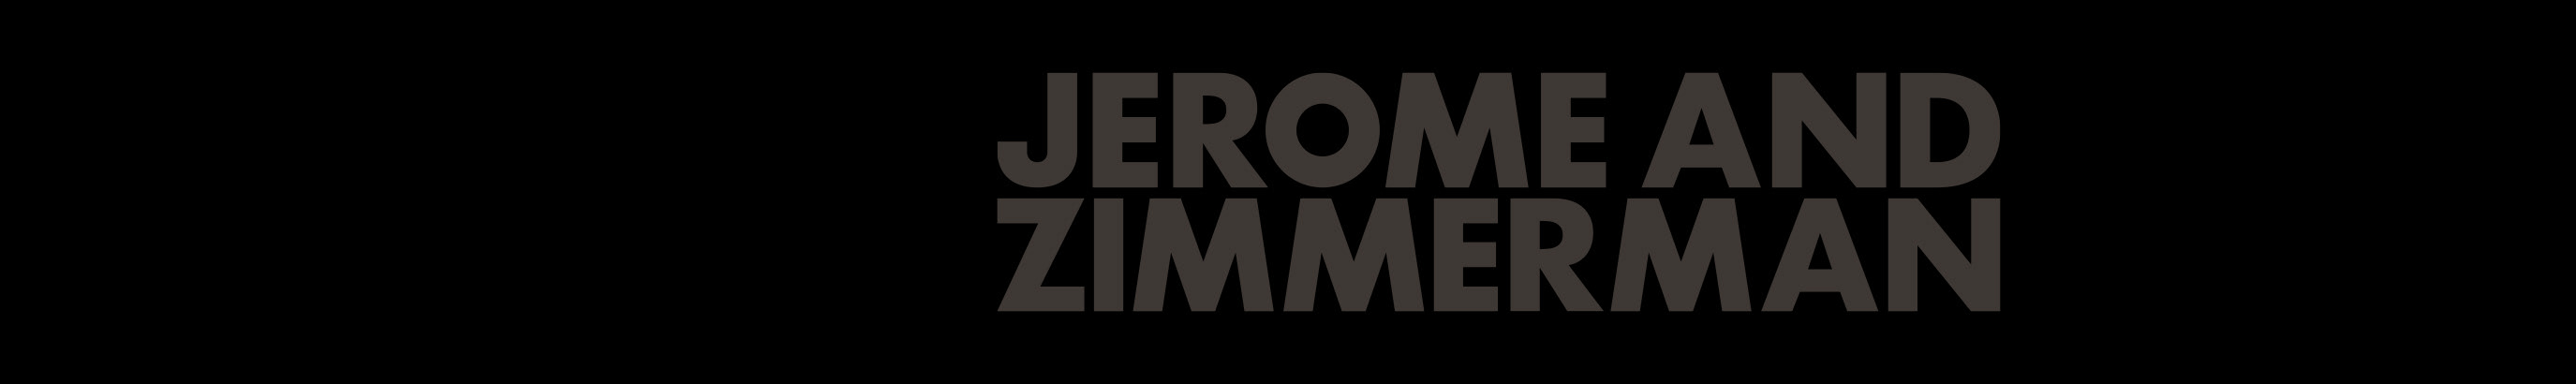 Jerome & Zimmerman profil başlığı